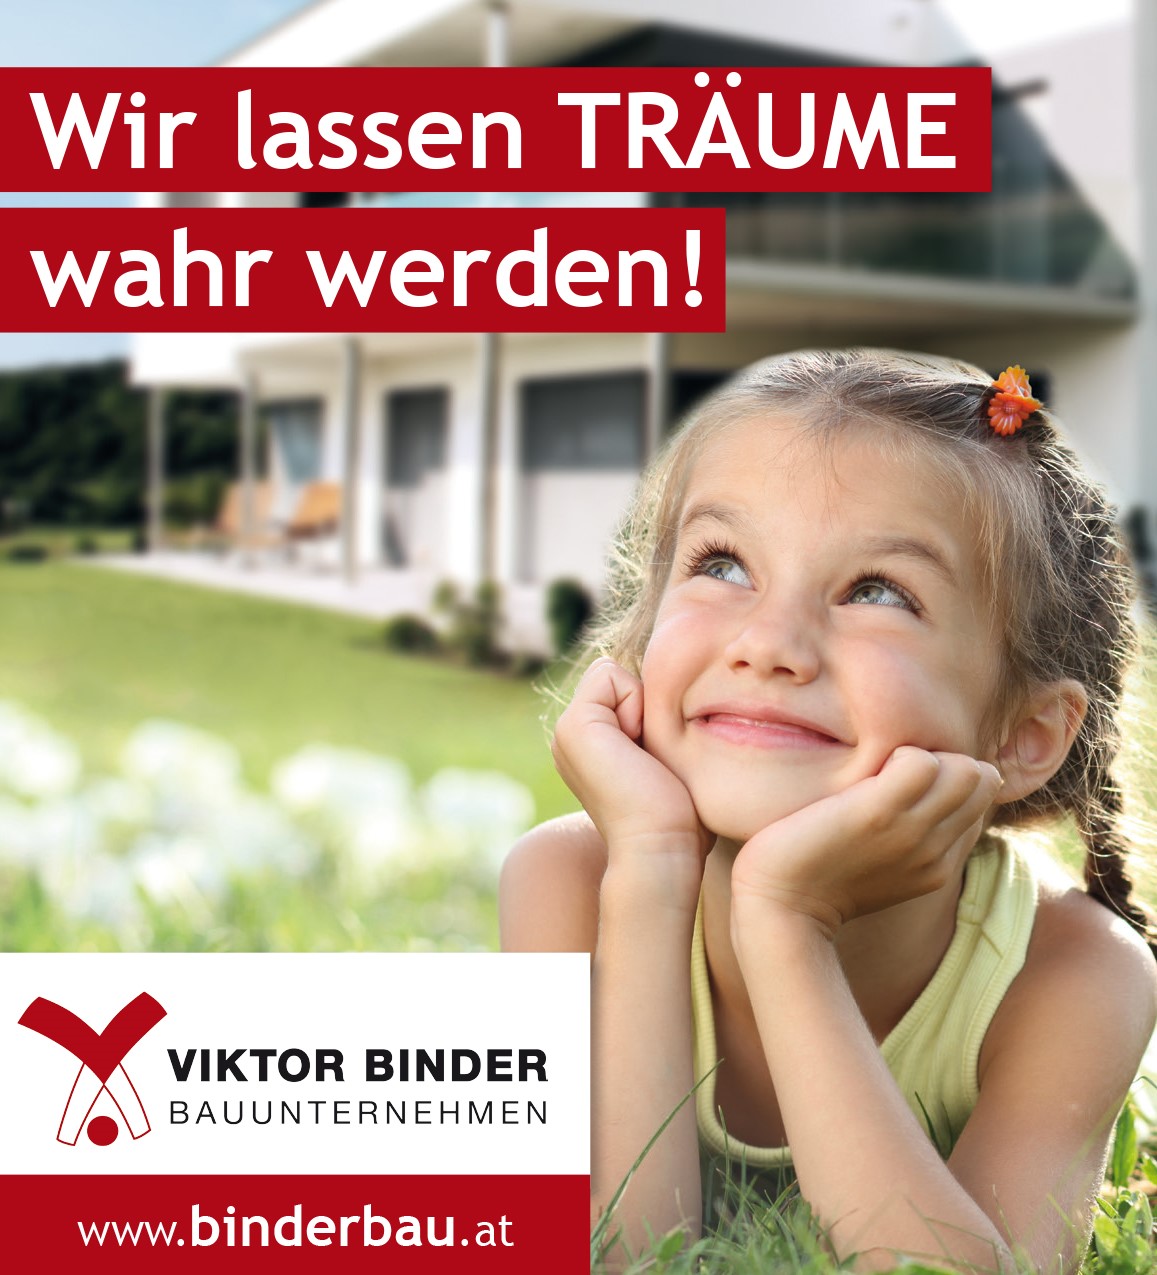 Bilder Binder Viktor GmbH - Baunternehmen